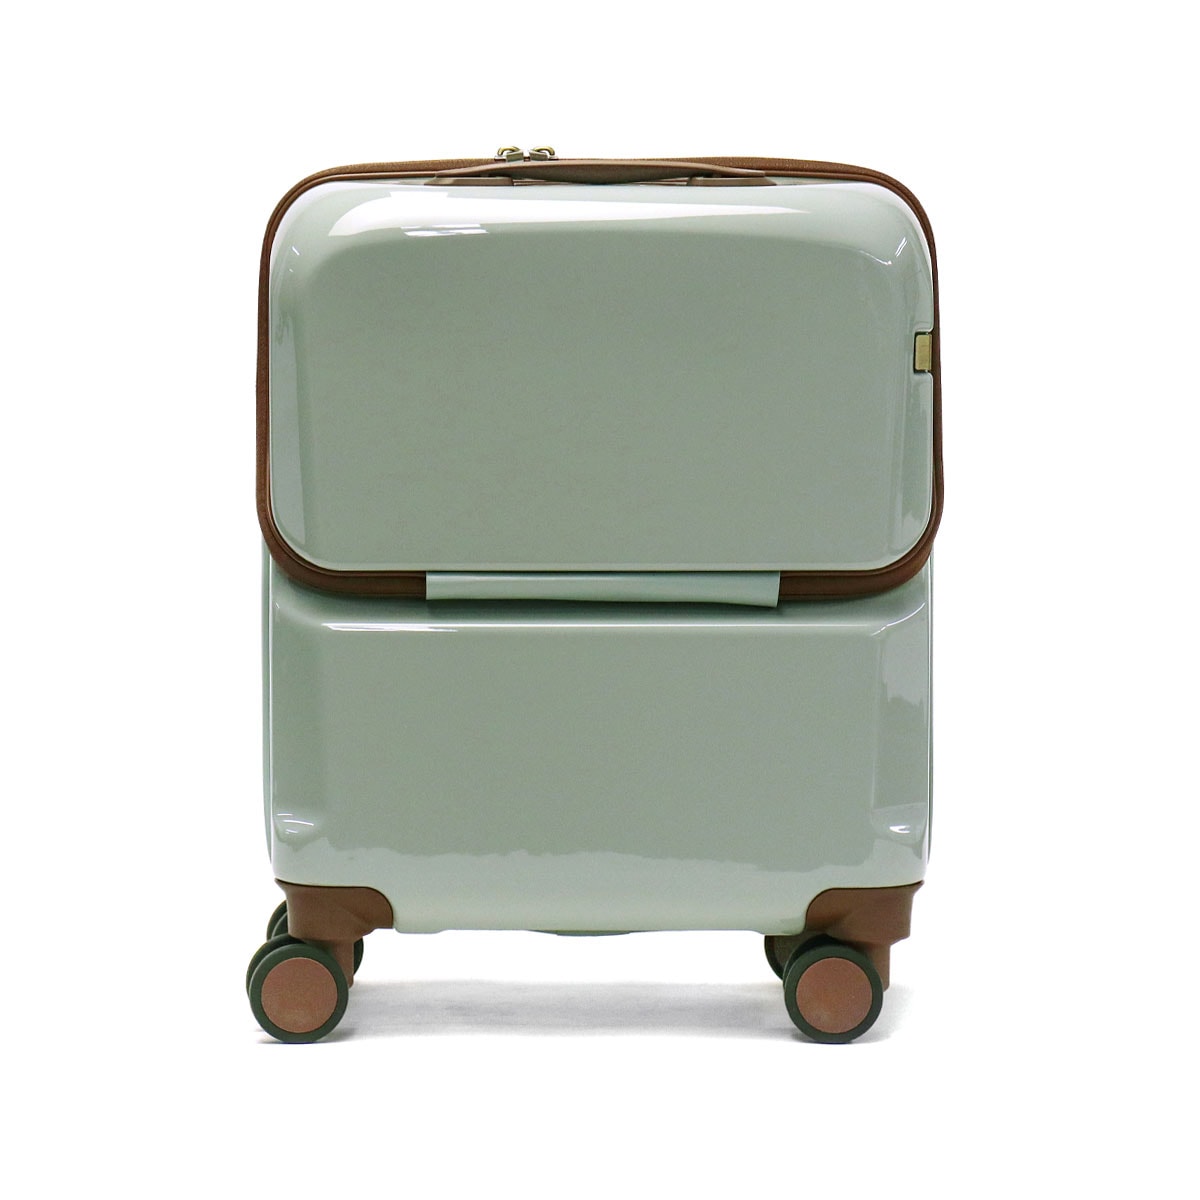 【予約販売品】 クリーディエ 【5年保証】スーツケース 06921 ストッパー インナーバッグ 抗菌 Sサイズ キャリーバッグ